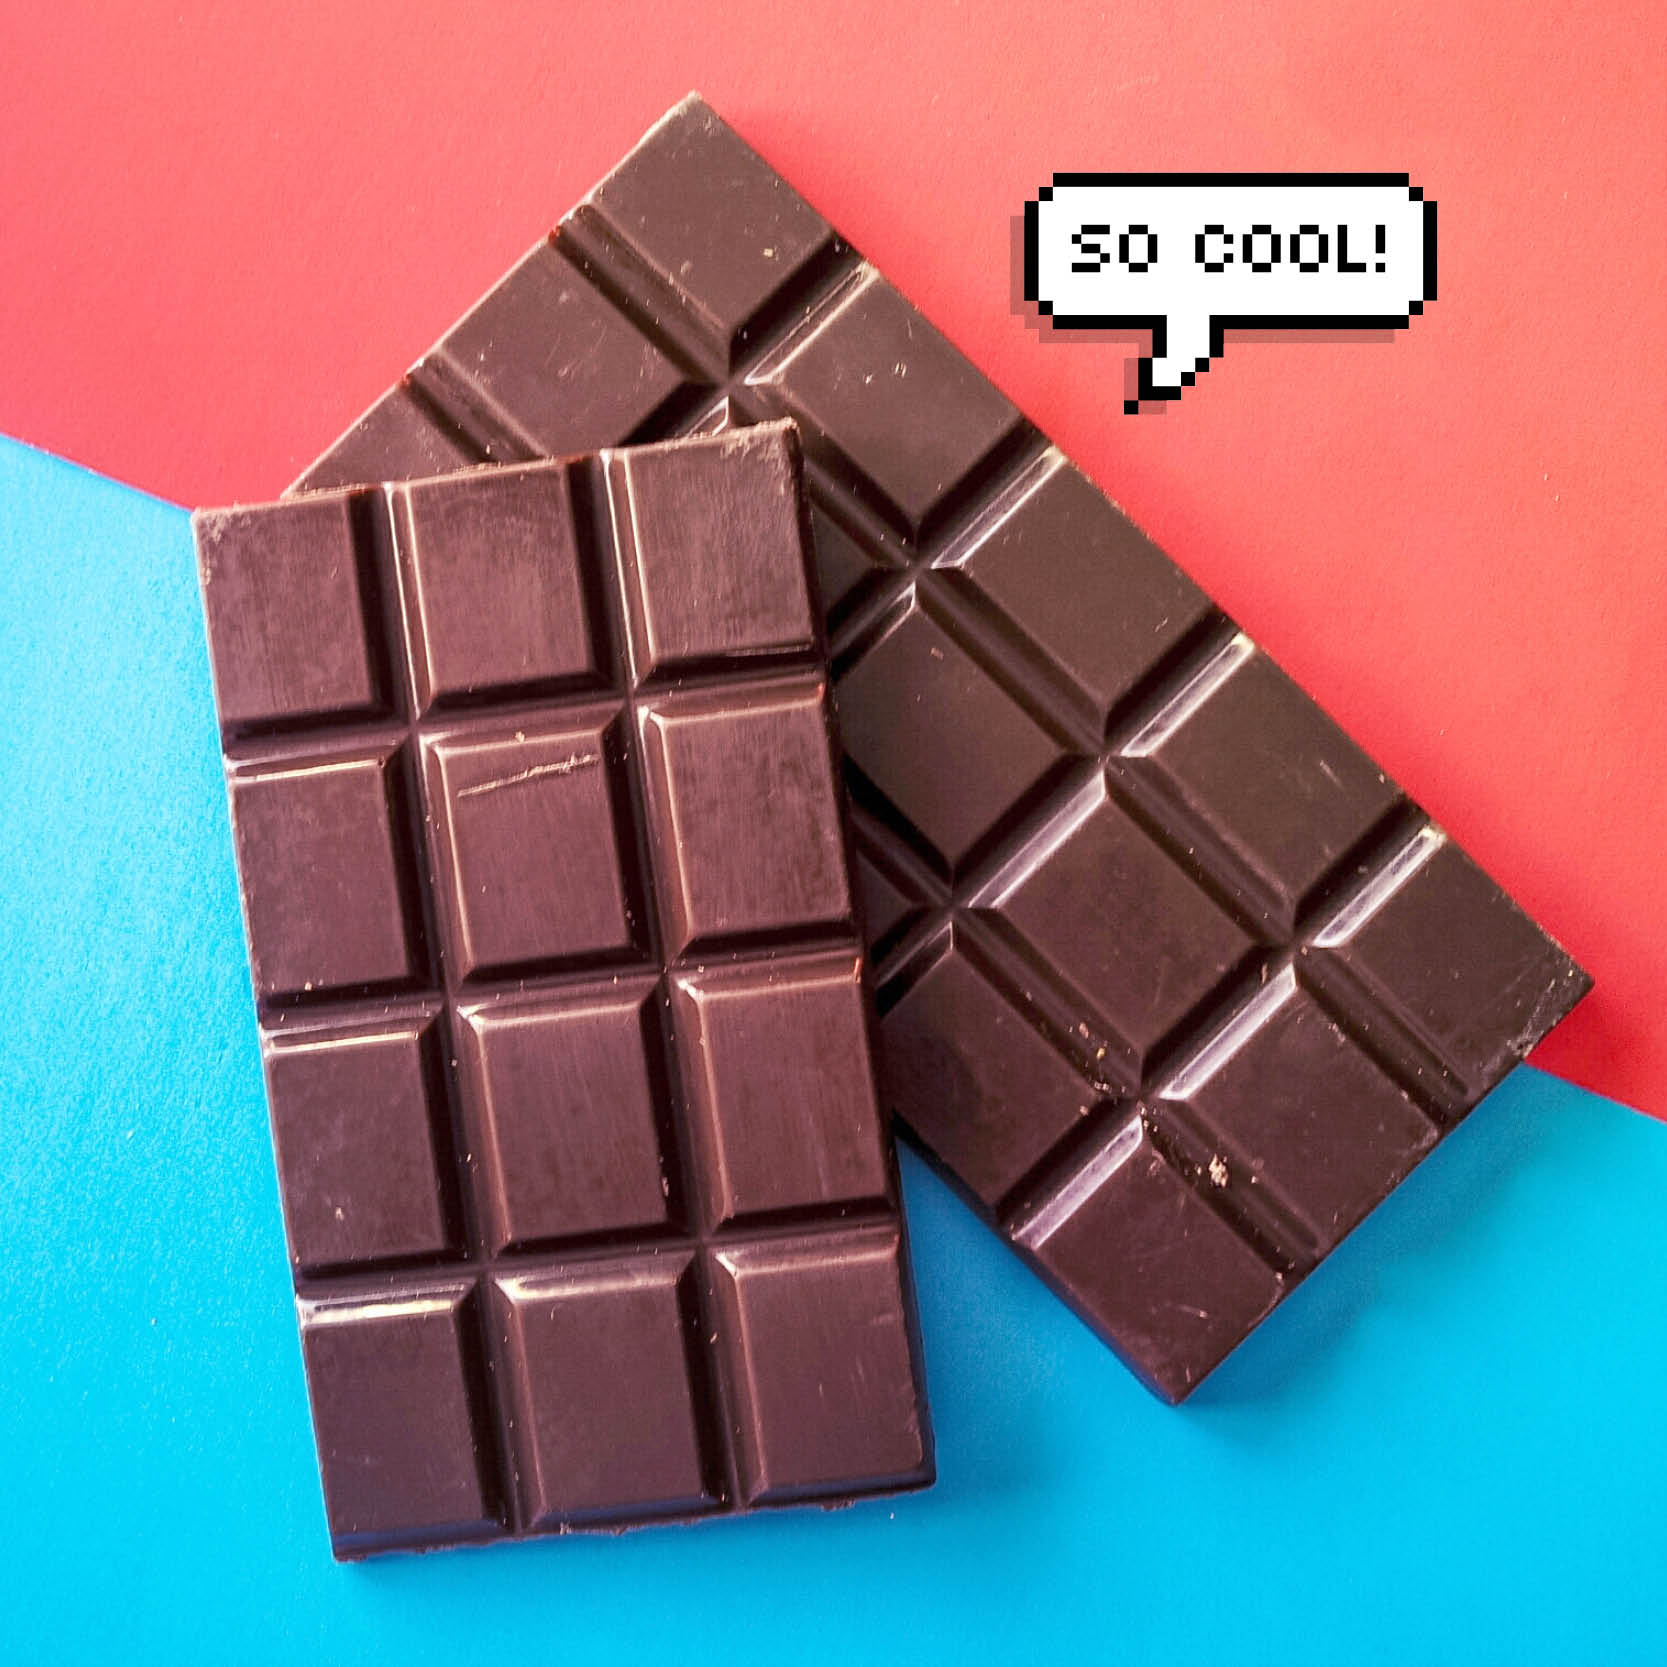 Интернет шоколада. Темный шоколад. Темная шоколадка. Экзотический шоколад. Темный шоколад вкусный.